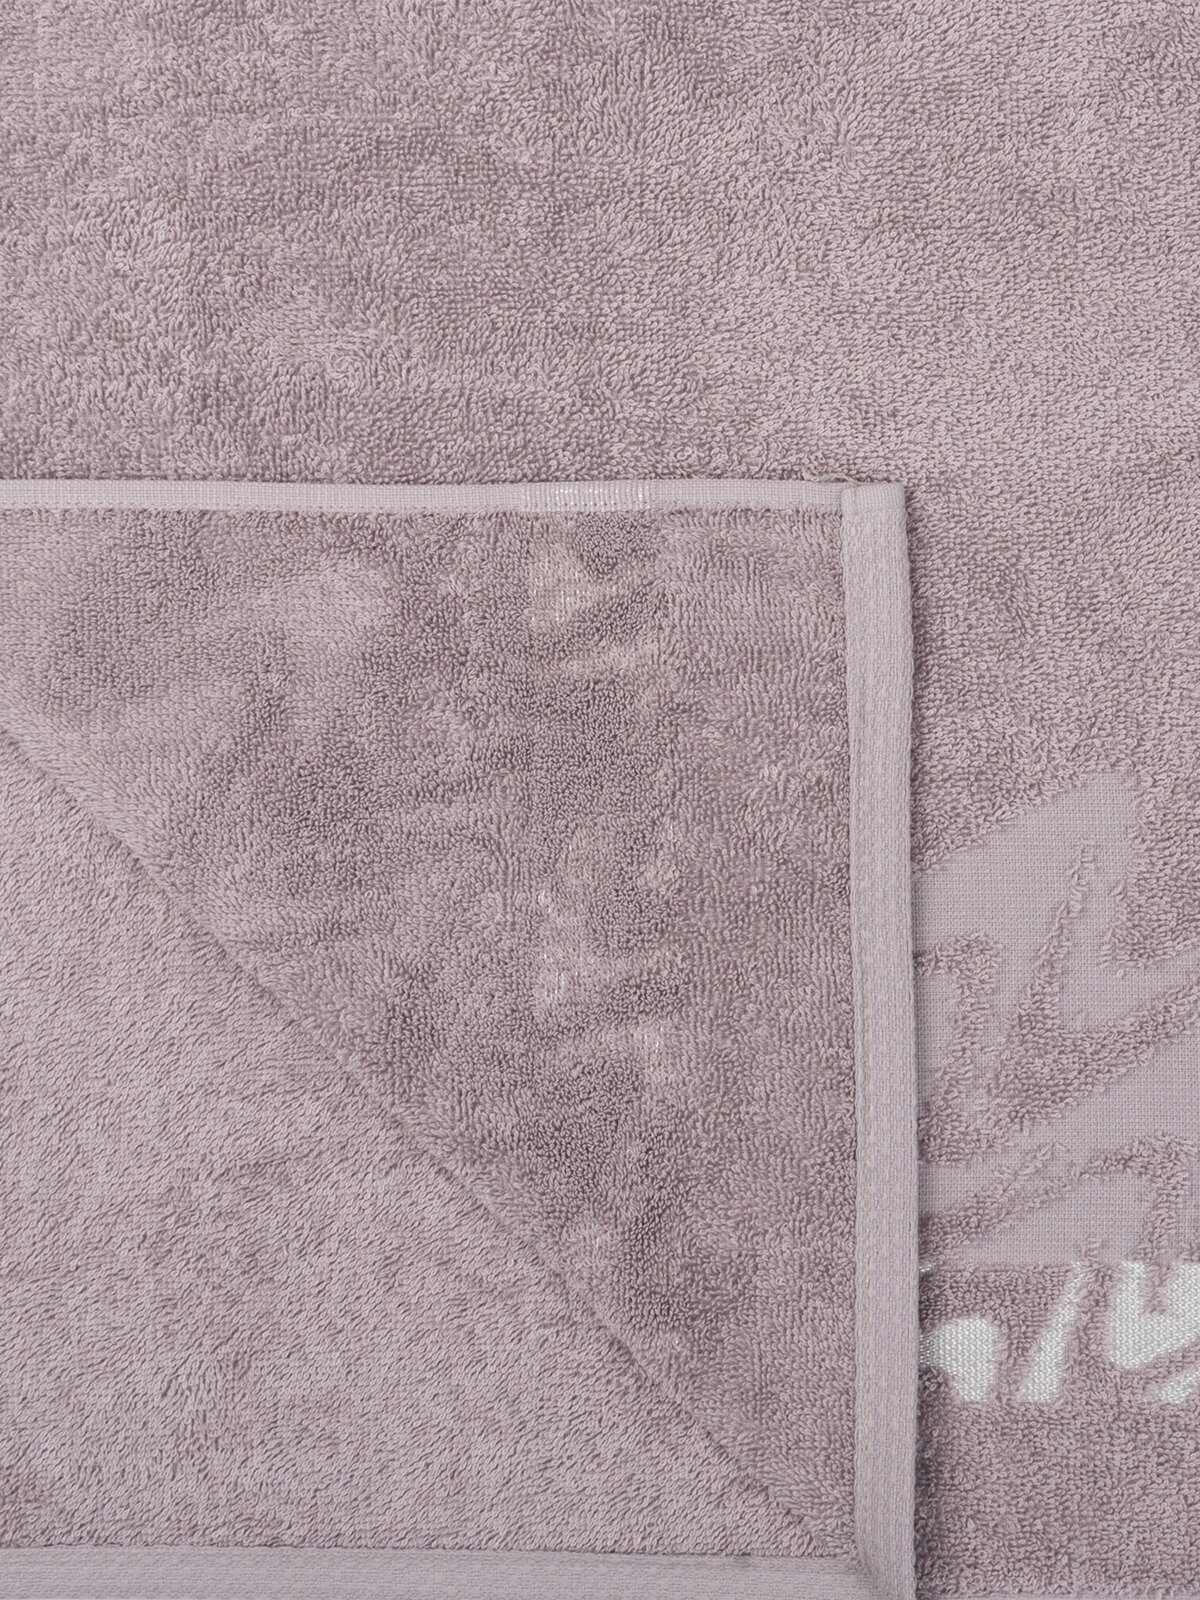 Полотенце махровое для лица и рук, Донецкая мануфактура,Brilliance, 50Х90 см, цвет:серый, 100% хлопок - фотография № 5